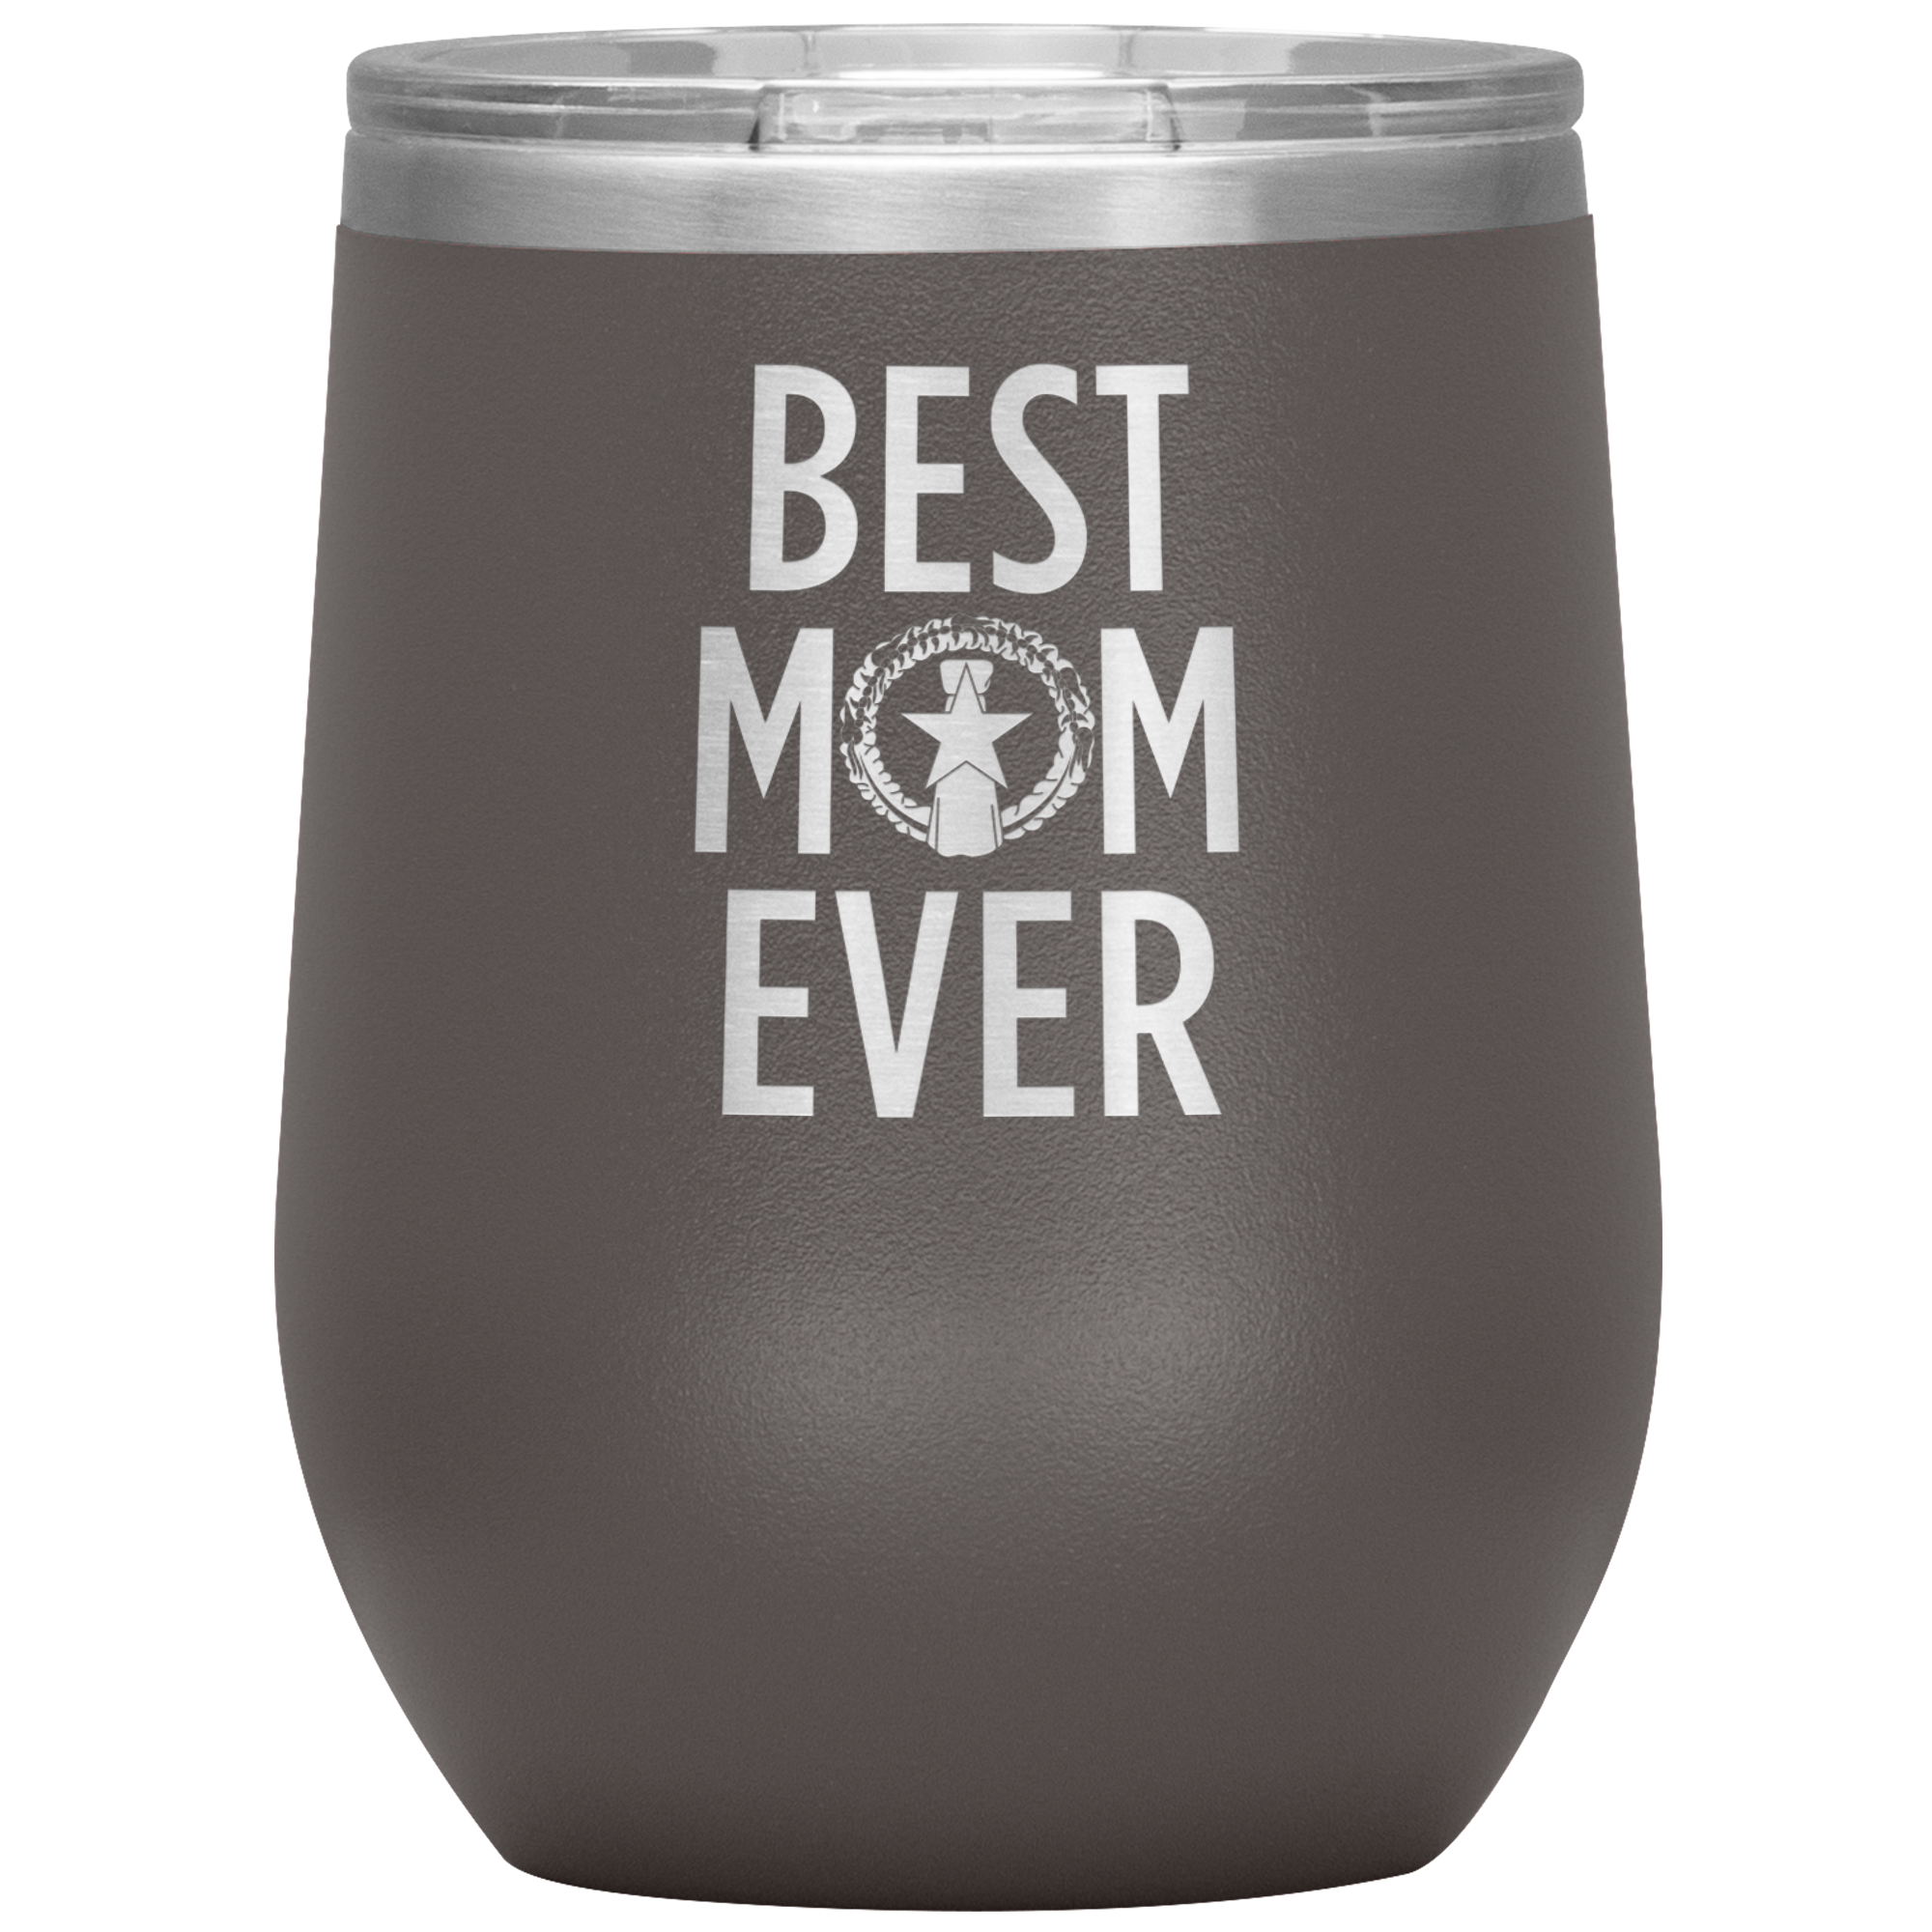 Best Mom Ever CNMI Seal Wine Tumbler